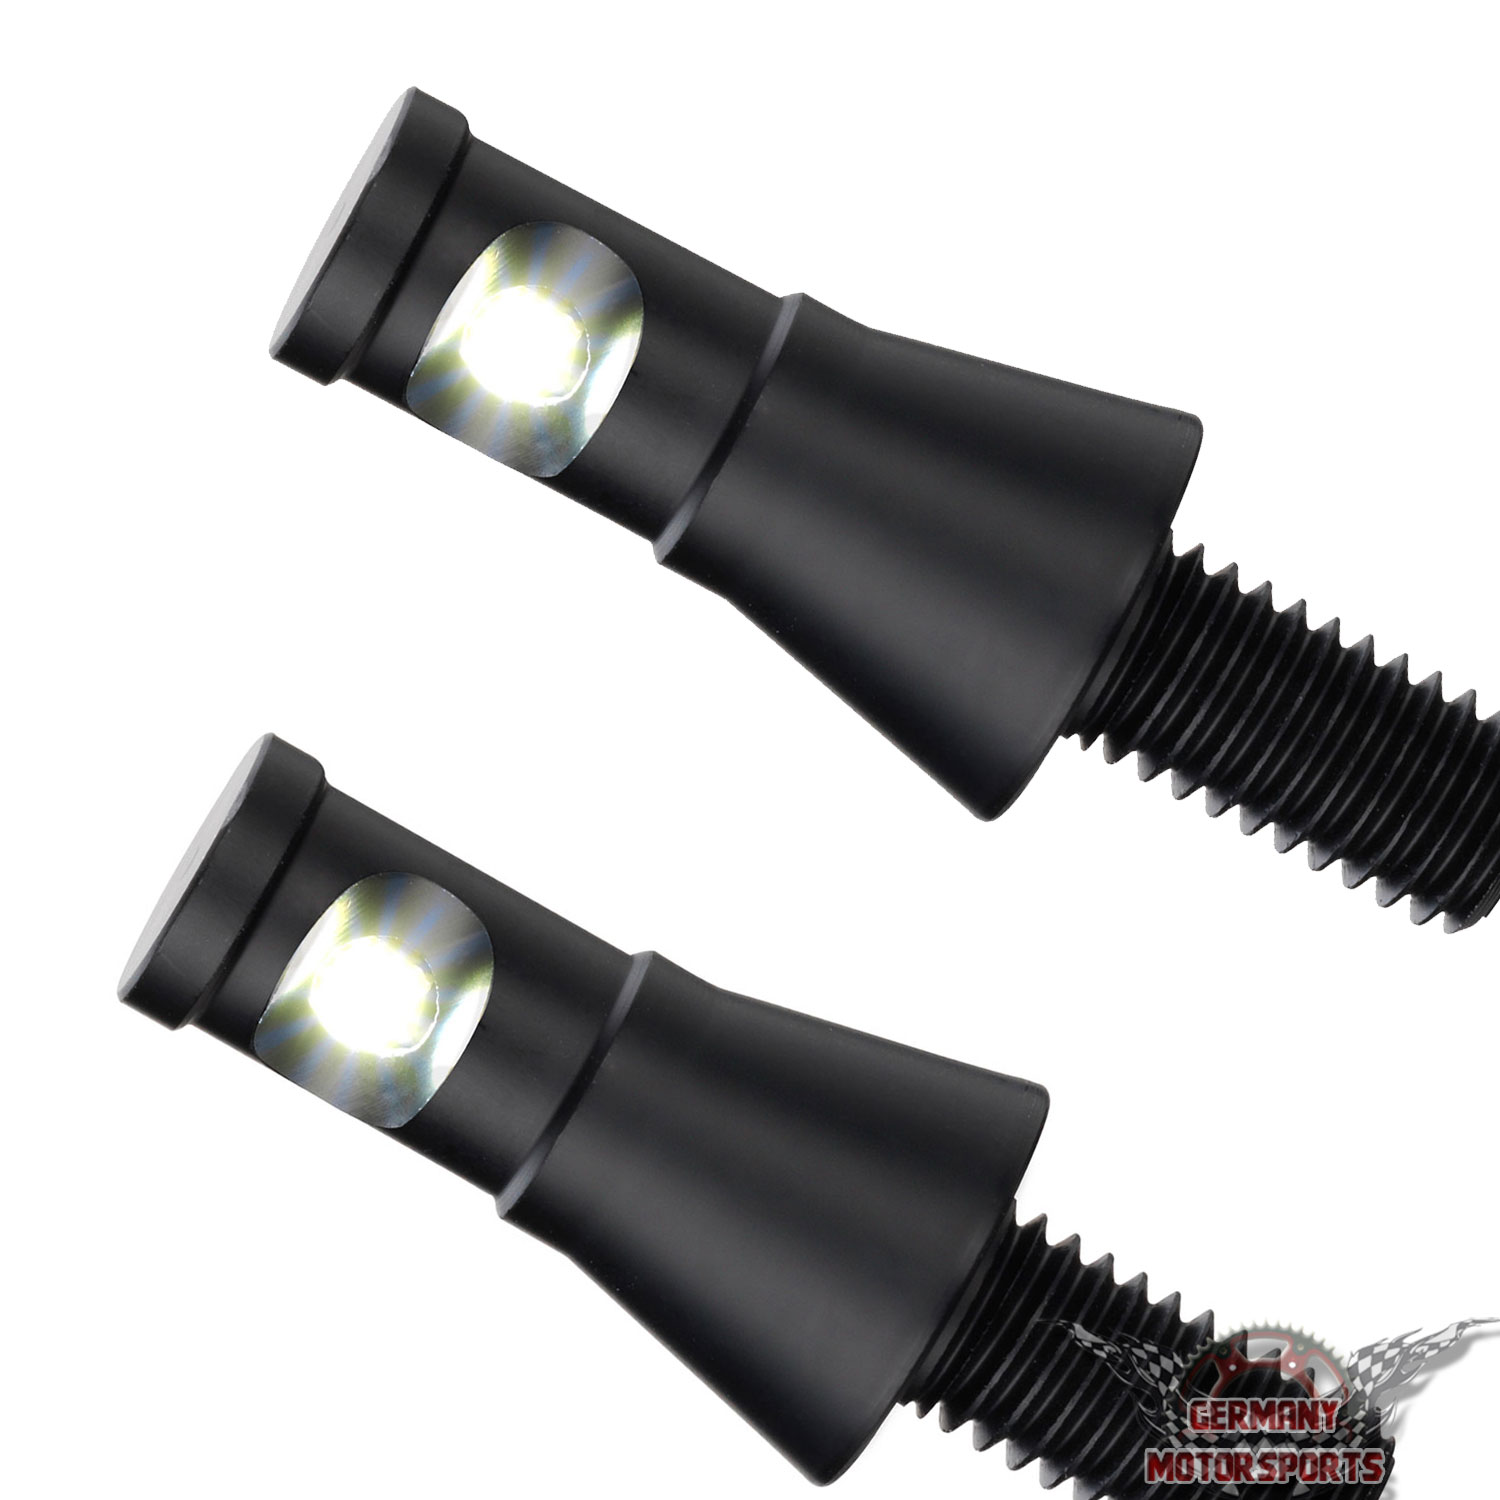 ECSiNG 4 x Motorrad-Kennzeichenbeleuchtung, 12 V, 3 LEDs, universal, für  Auto, Motorrad, Kennzeichenbeleuchtung, Schrauben, Bolzenlicht